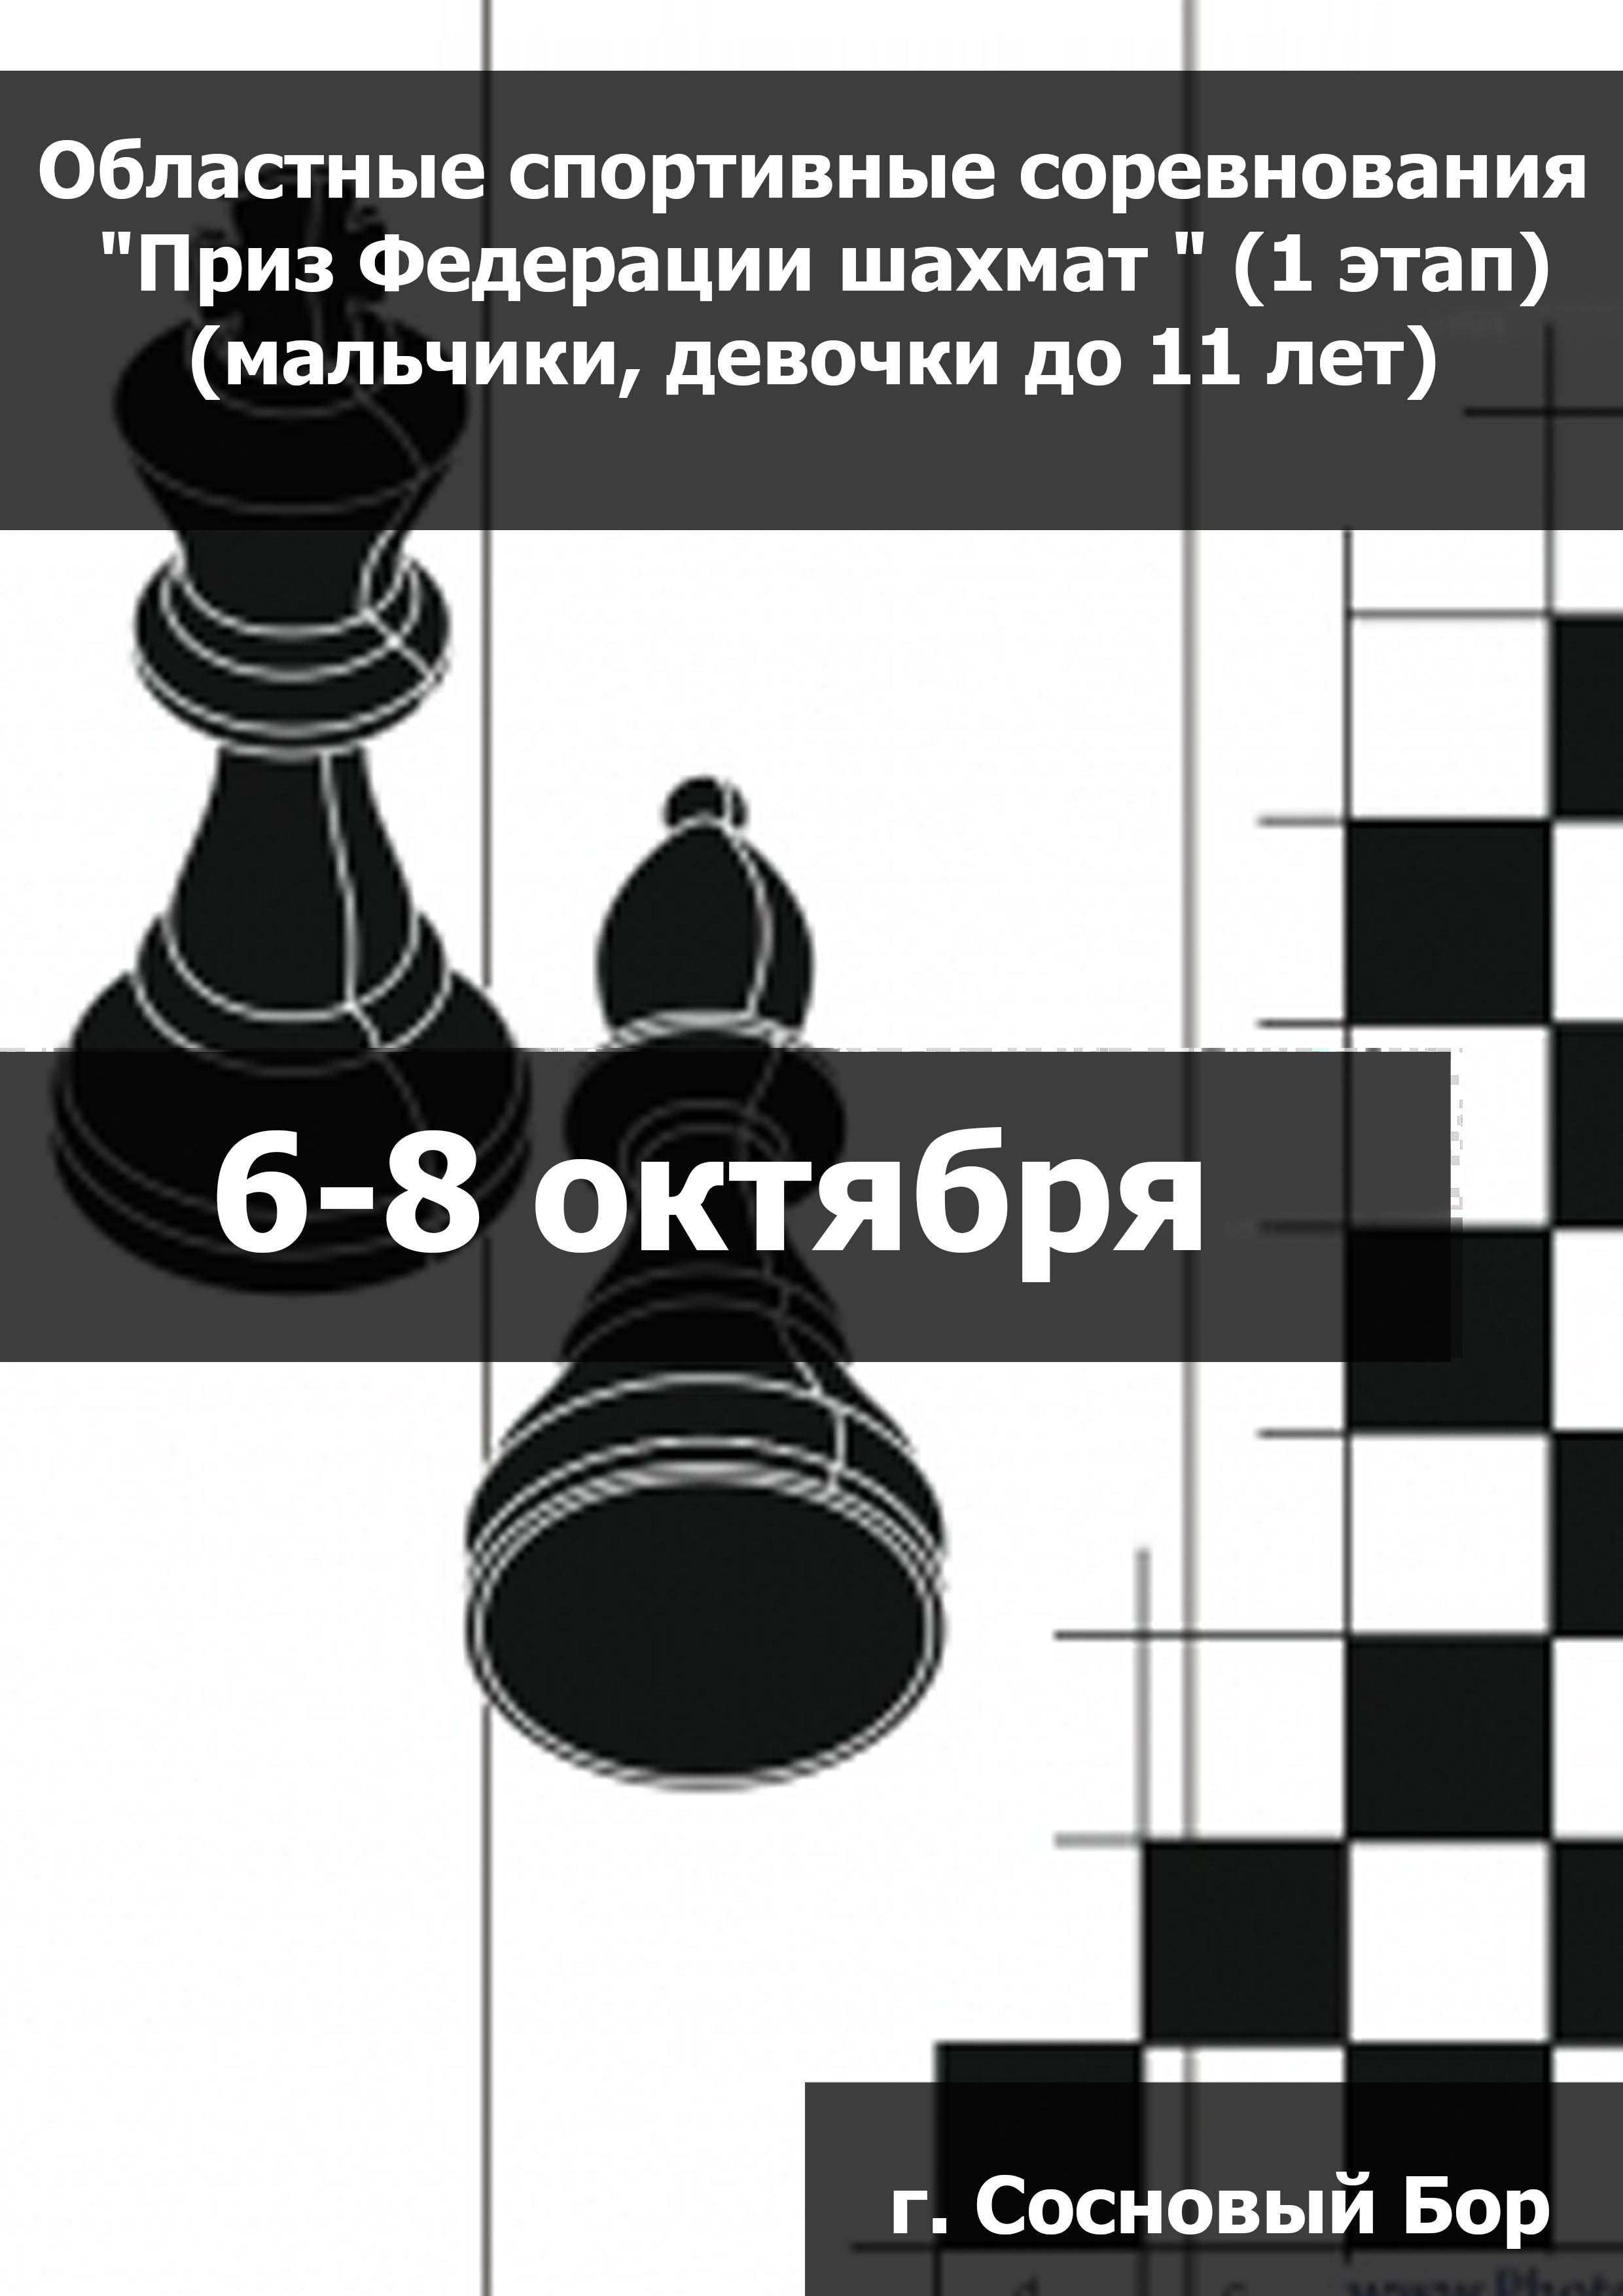 Областные спортивные соревнования "Приз Федерации шахмат " (1 этап) (мальчики, девочки до 11 лет) 6  հոկտեմբերի
 2023  տարի
 